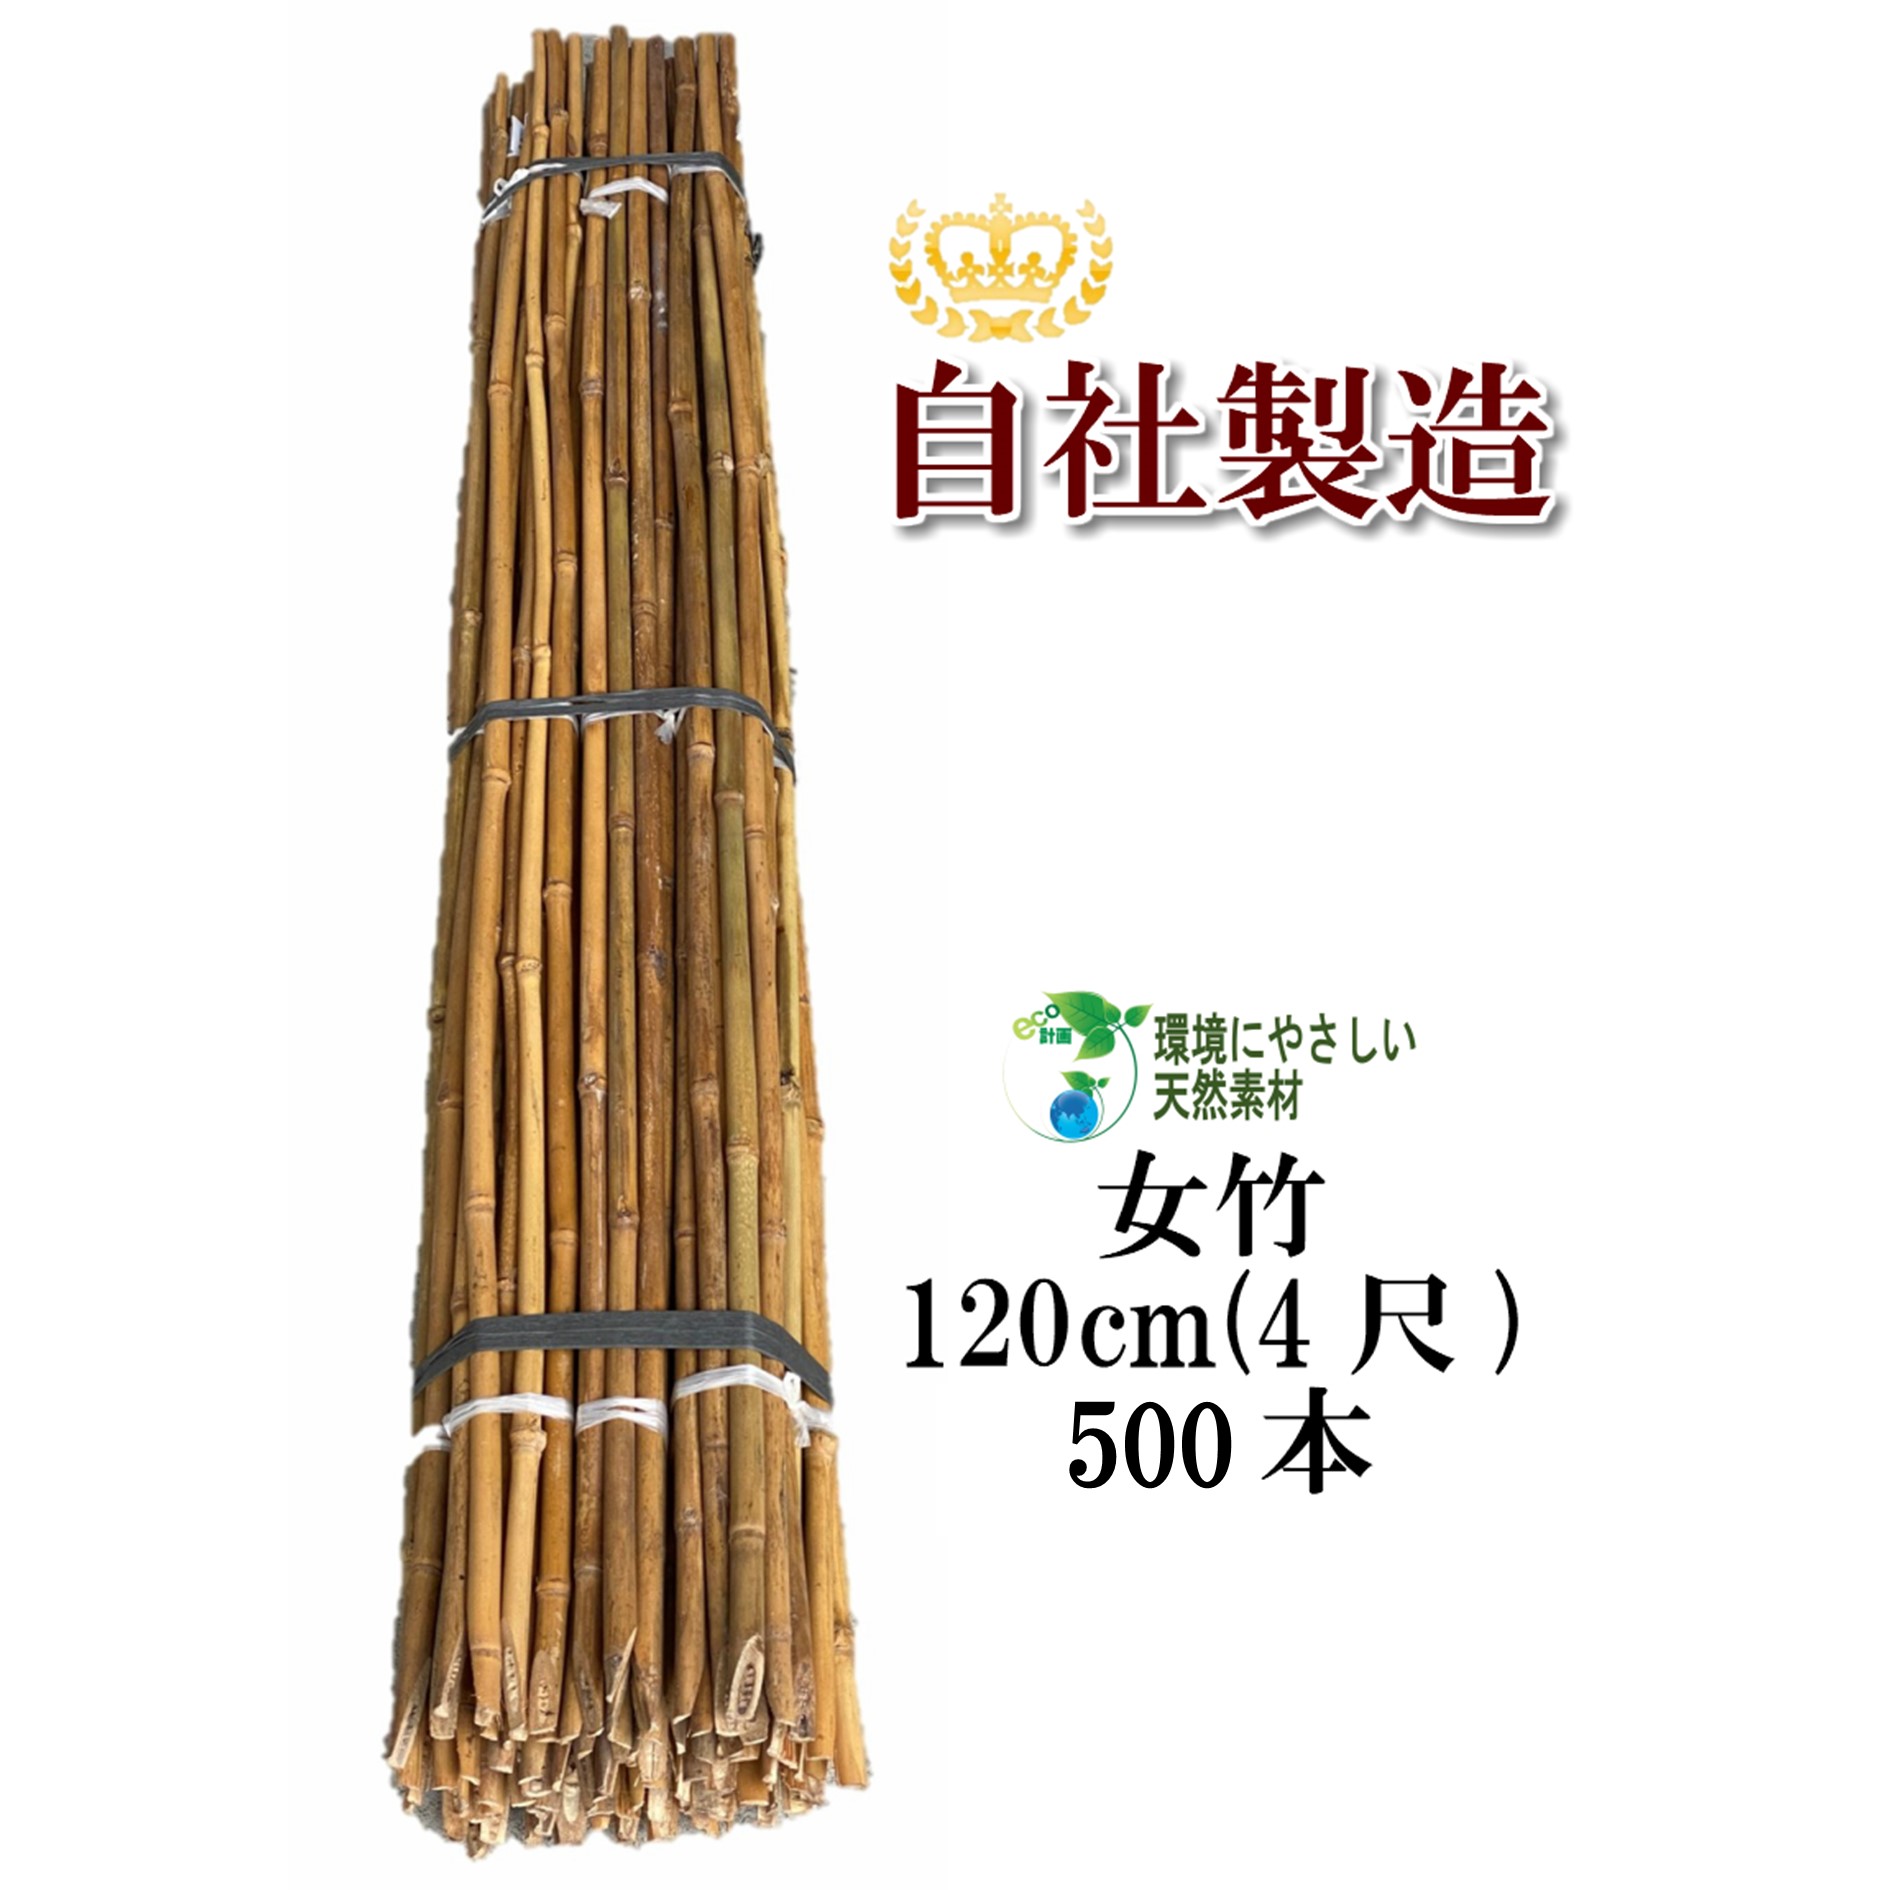 【楽天市場】女竹 90cm 100本 篠竹 添え木 竹支柱 農業支柱 園芸 